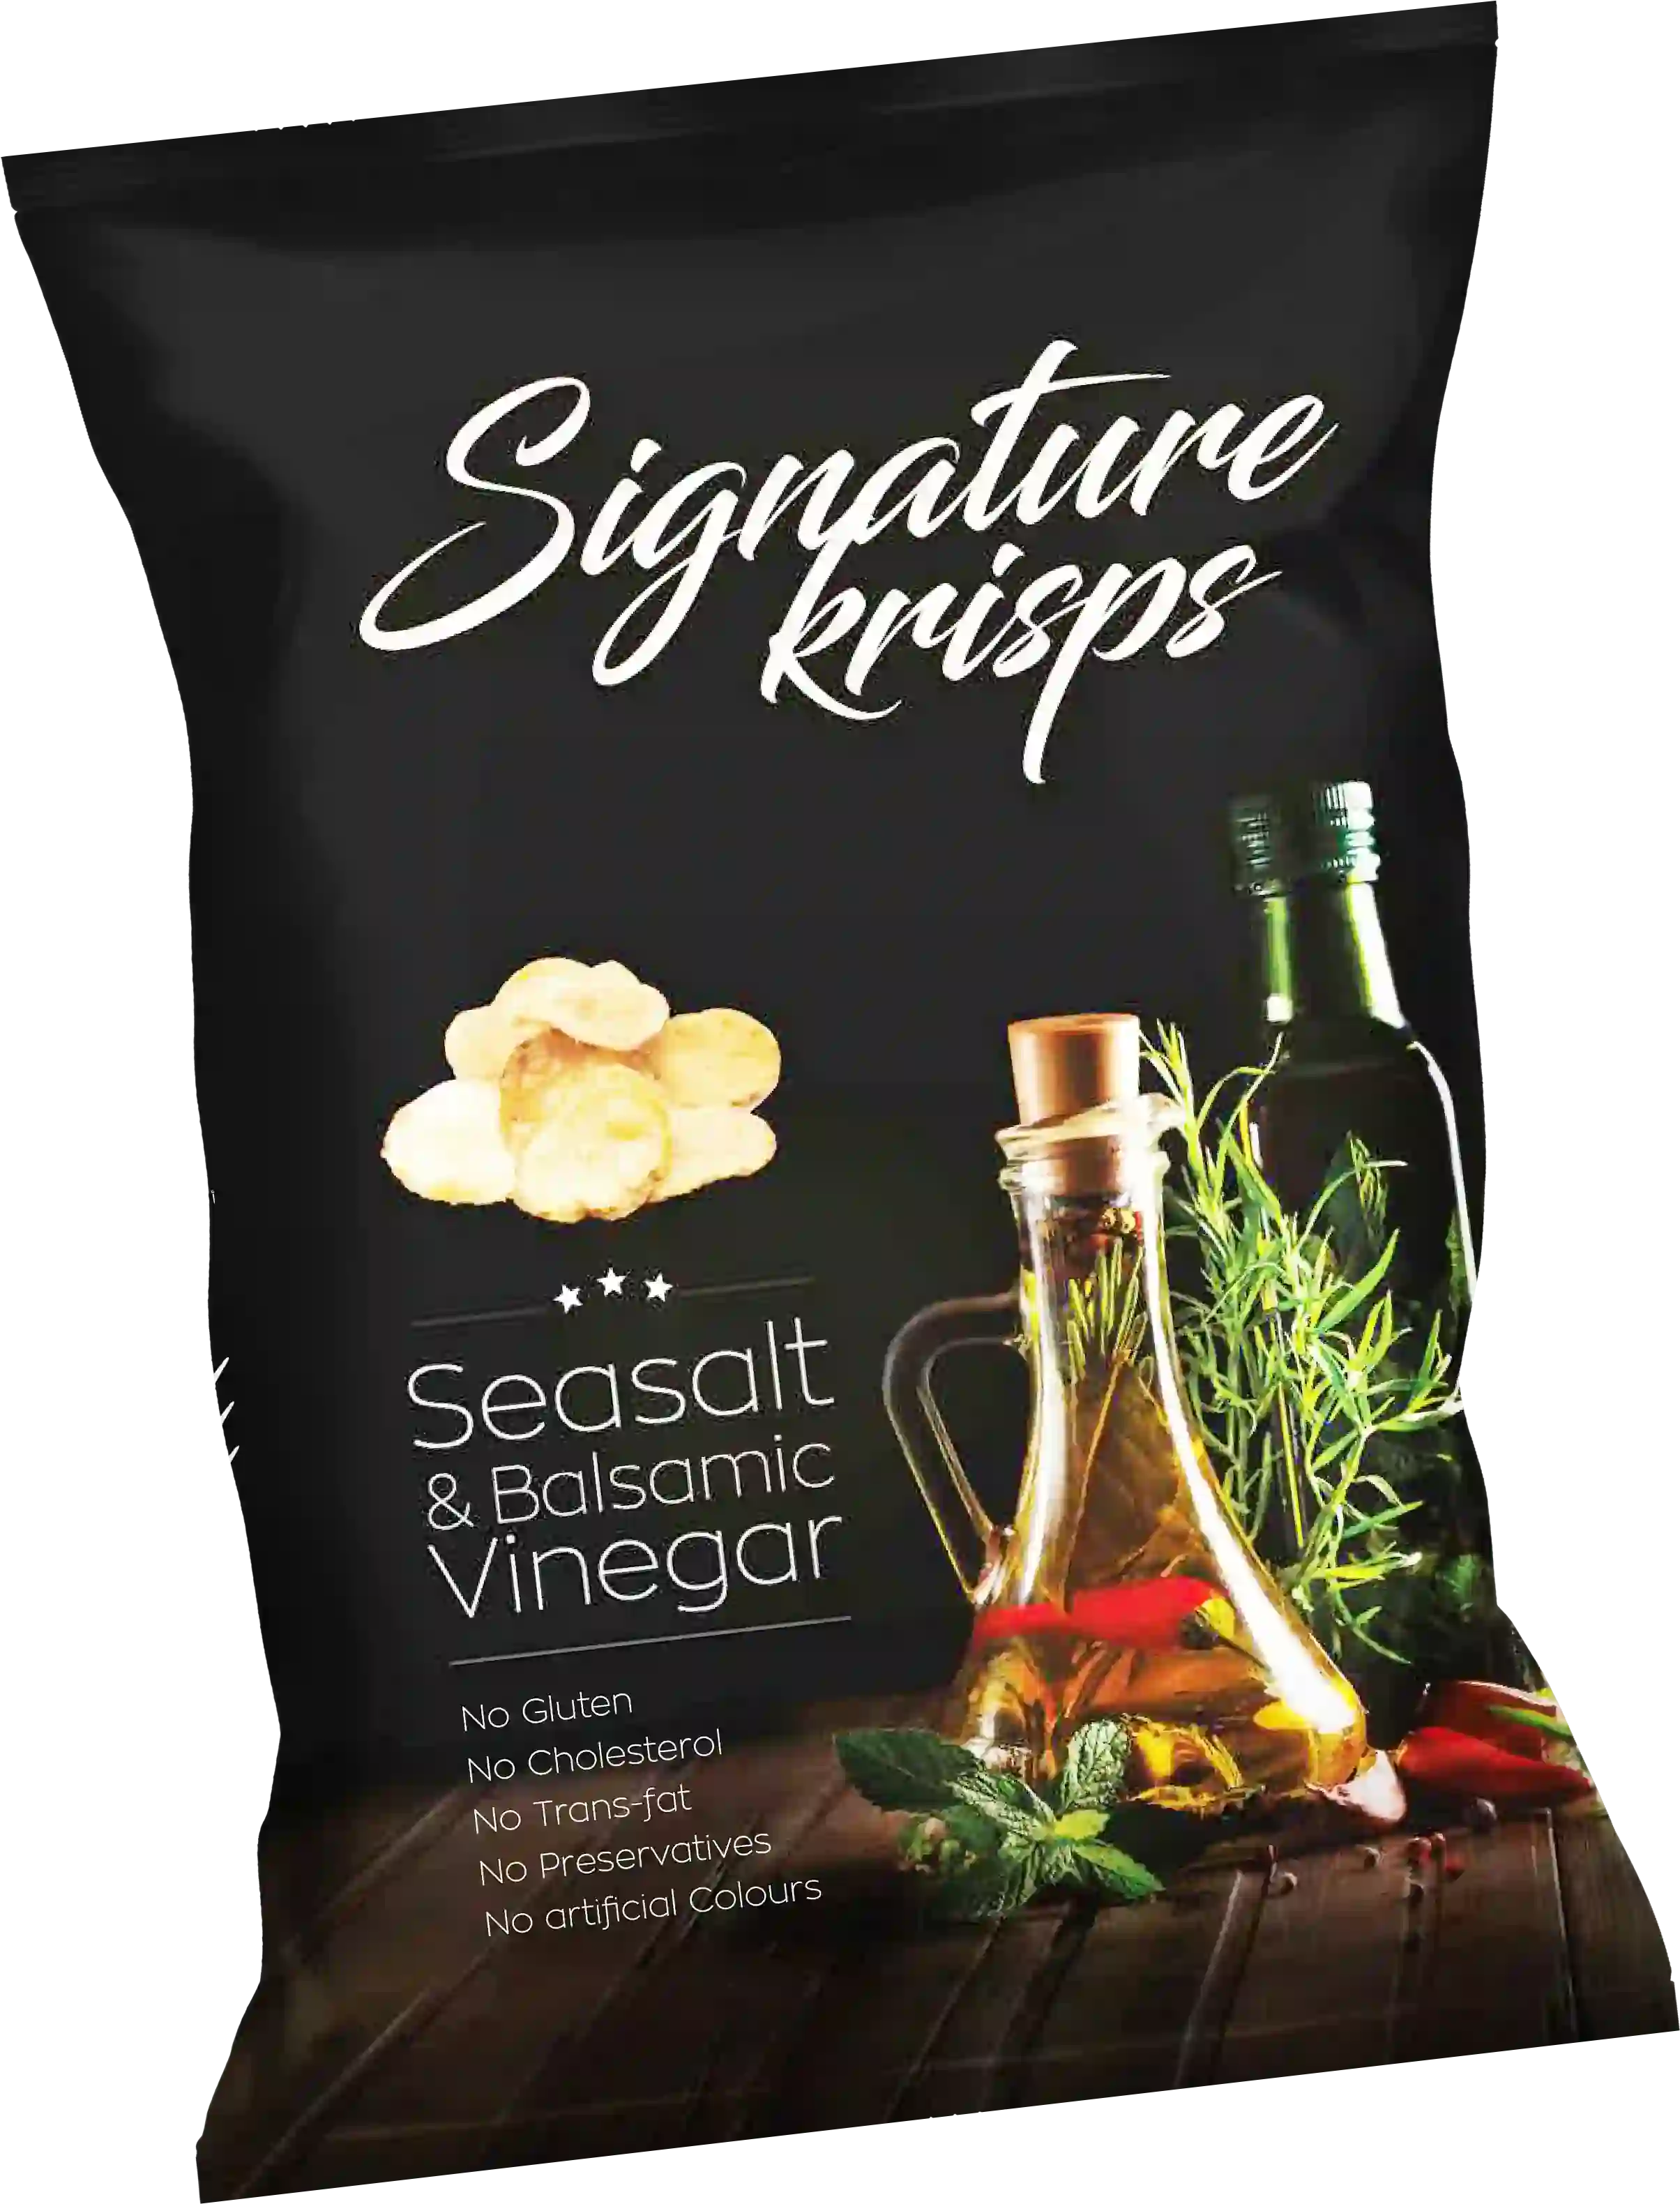 Signature Krisps Seasalt & balsamic Vinegar Carton